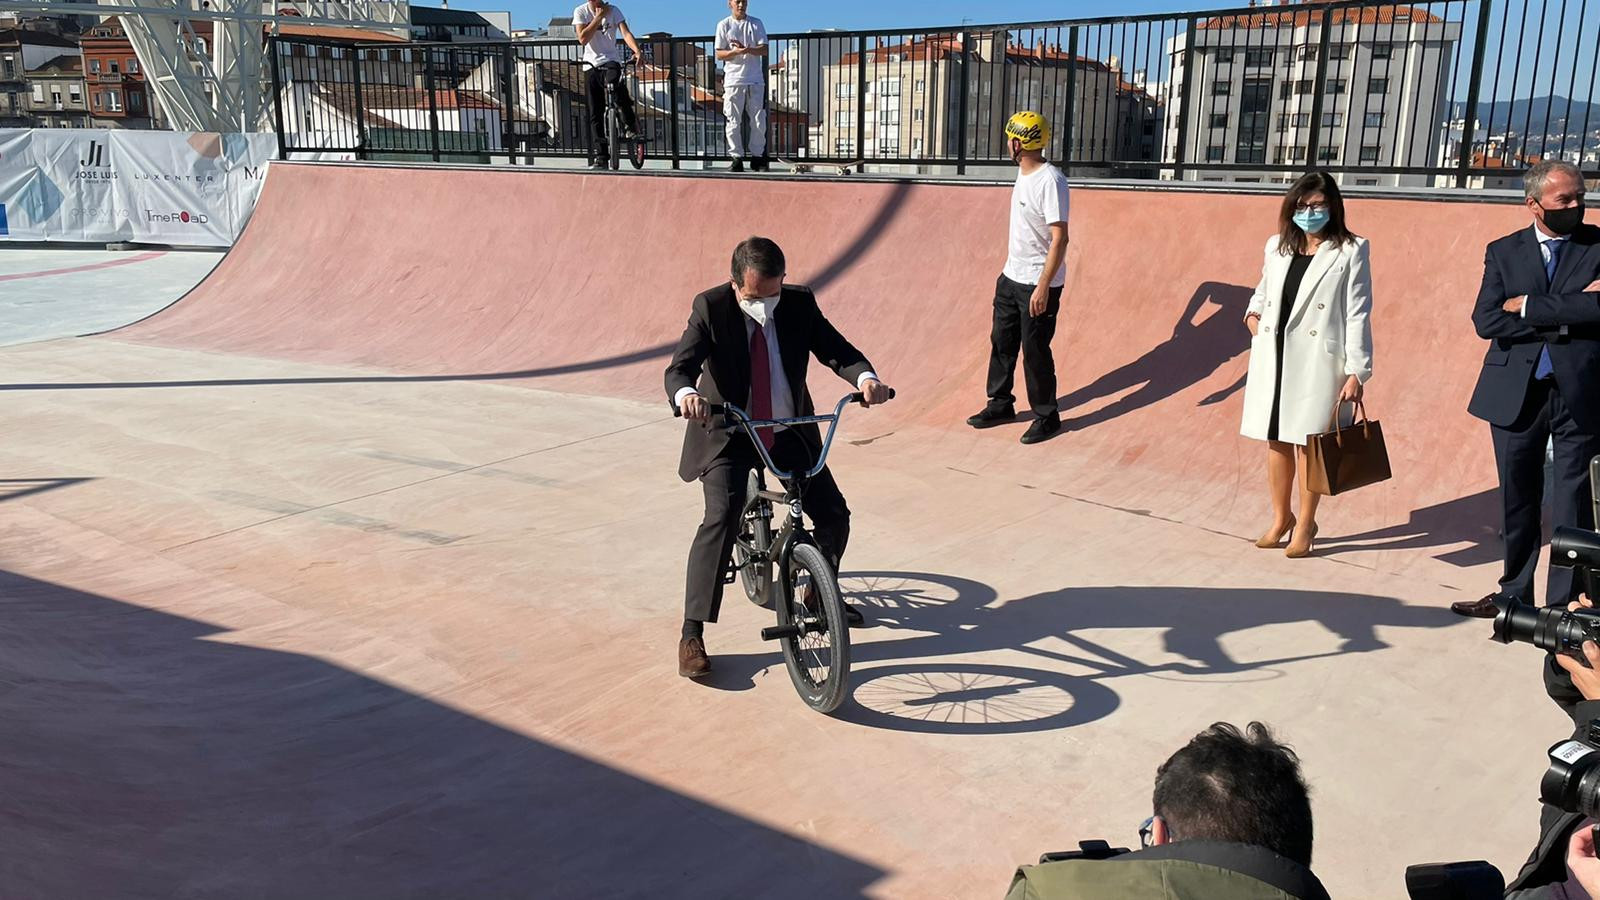 El alcalde en el skatepark de Vialia Vigo. Foto: Treintayseis